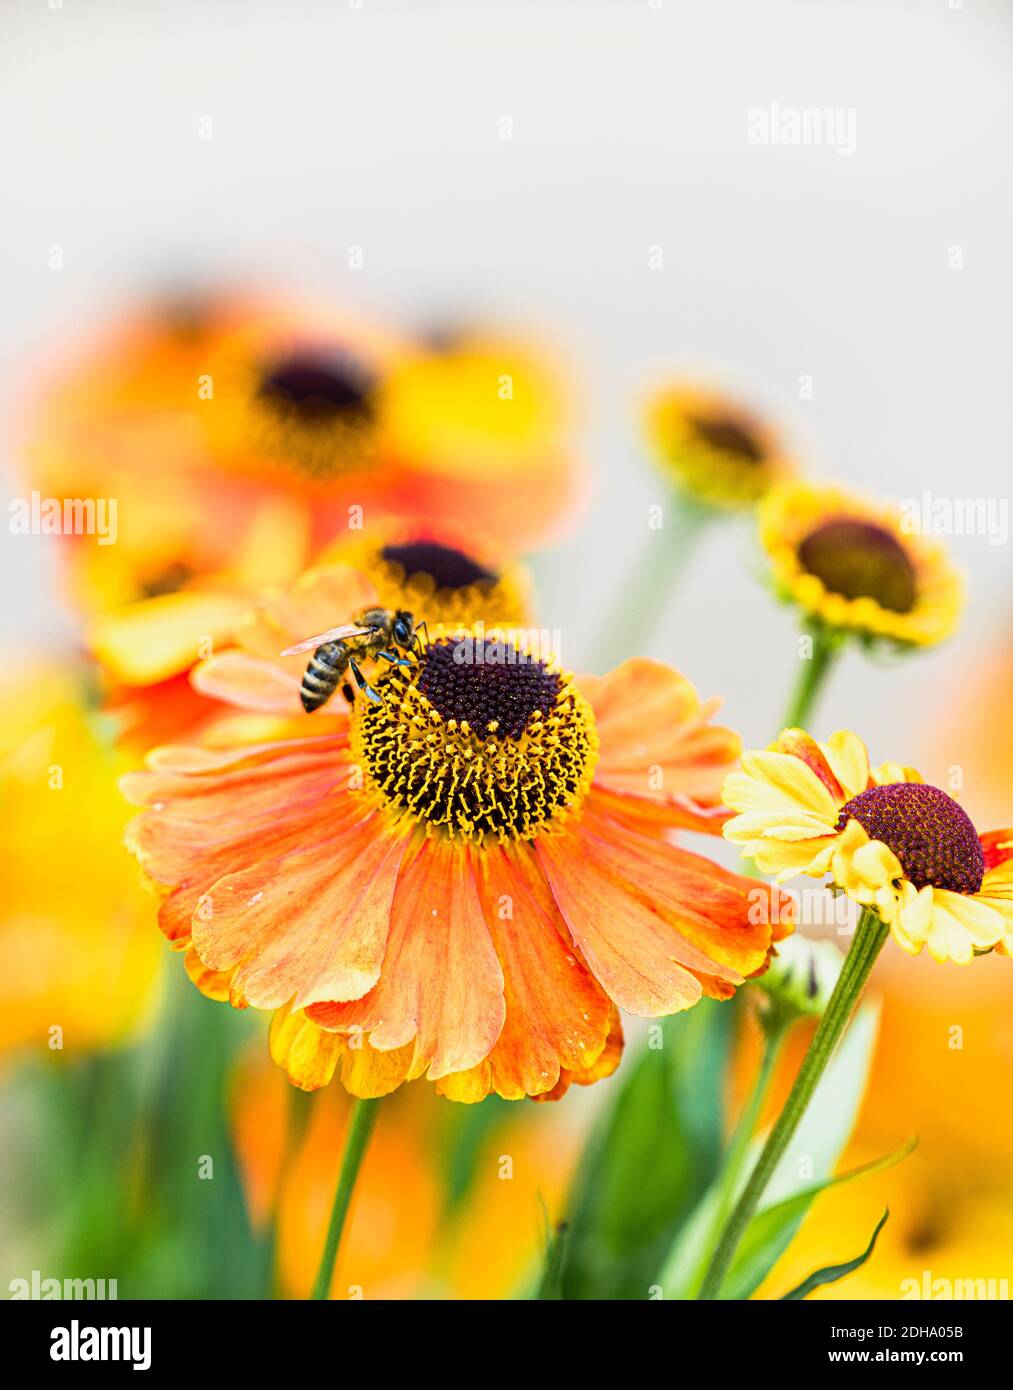 Sneezeweed, sneezeweed común, Helenium 'Moerheim Beauty', flor de color naranja creciendo al aire libre con pétalos y estambres visibles. Foto de stock